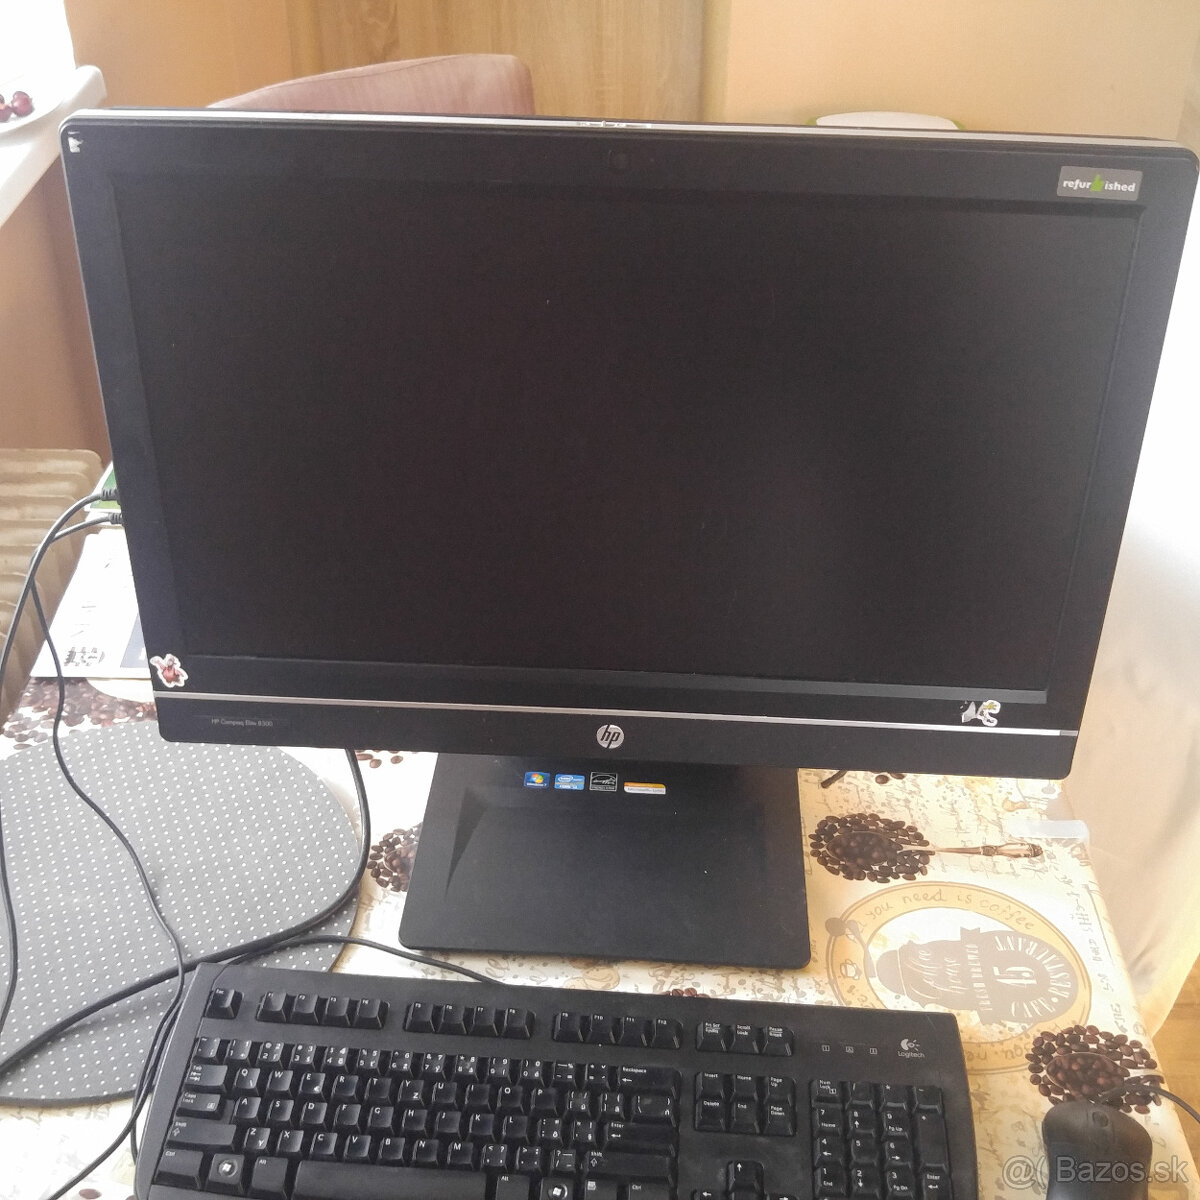 PC v monitore - HP Compaq Elite 8300 AiO 23"